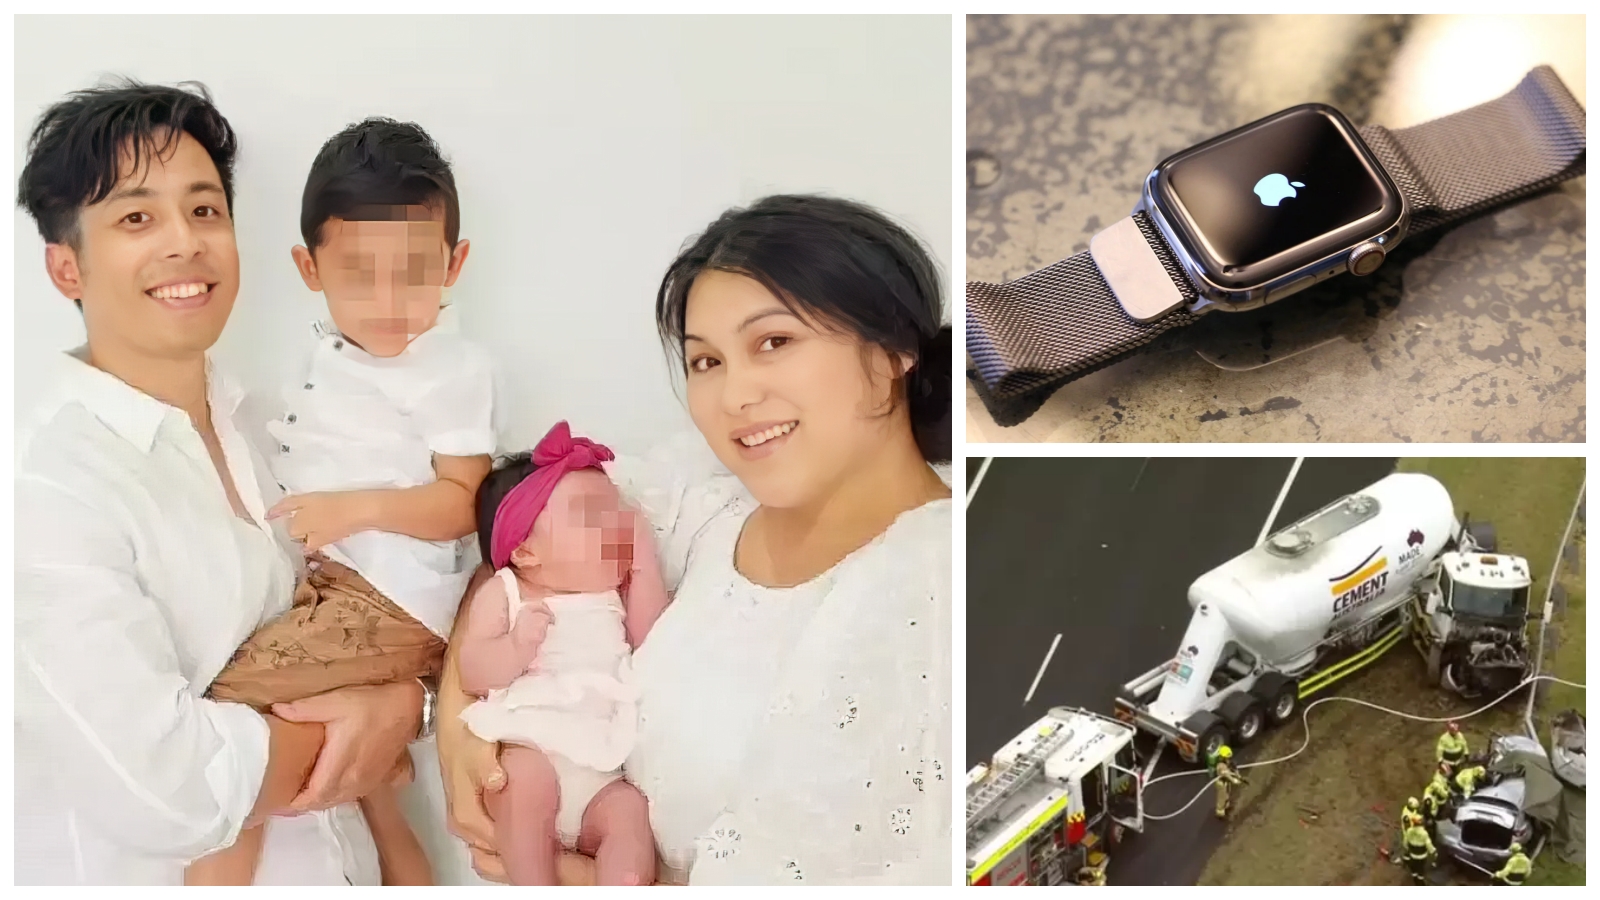 Ishte në punë/ Burri njoftohet nga Apple Watch për aksidentin e gruas: Vdes ajo dhe djali i mitur!